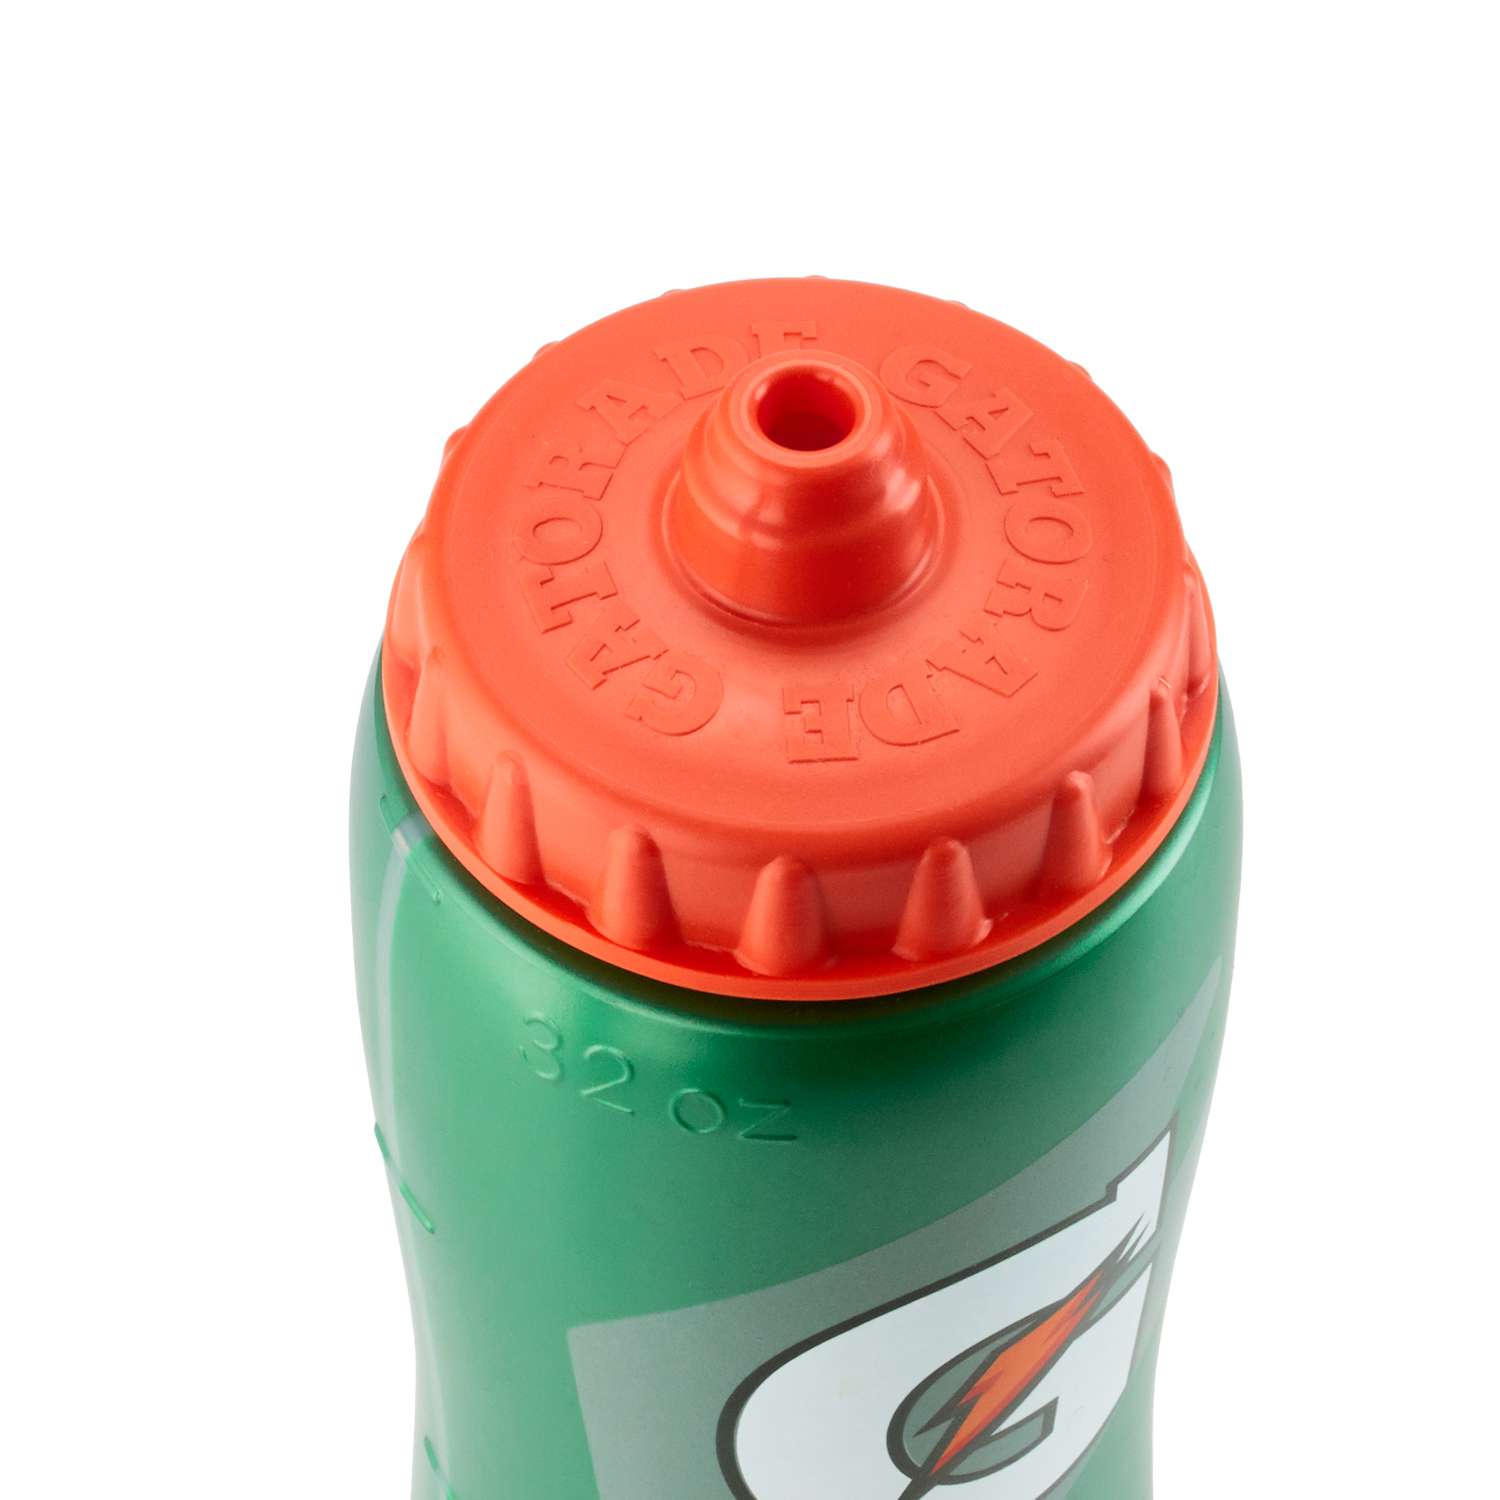 Gatorade Squeeze Bottle Holder, 32 oz